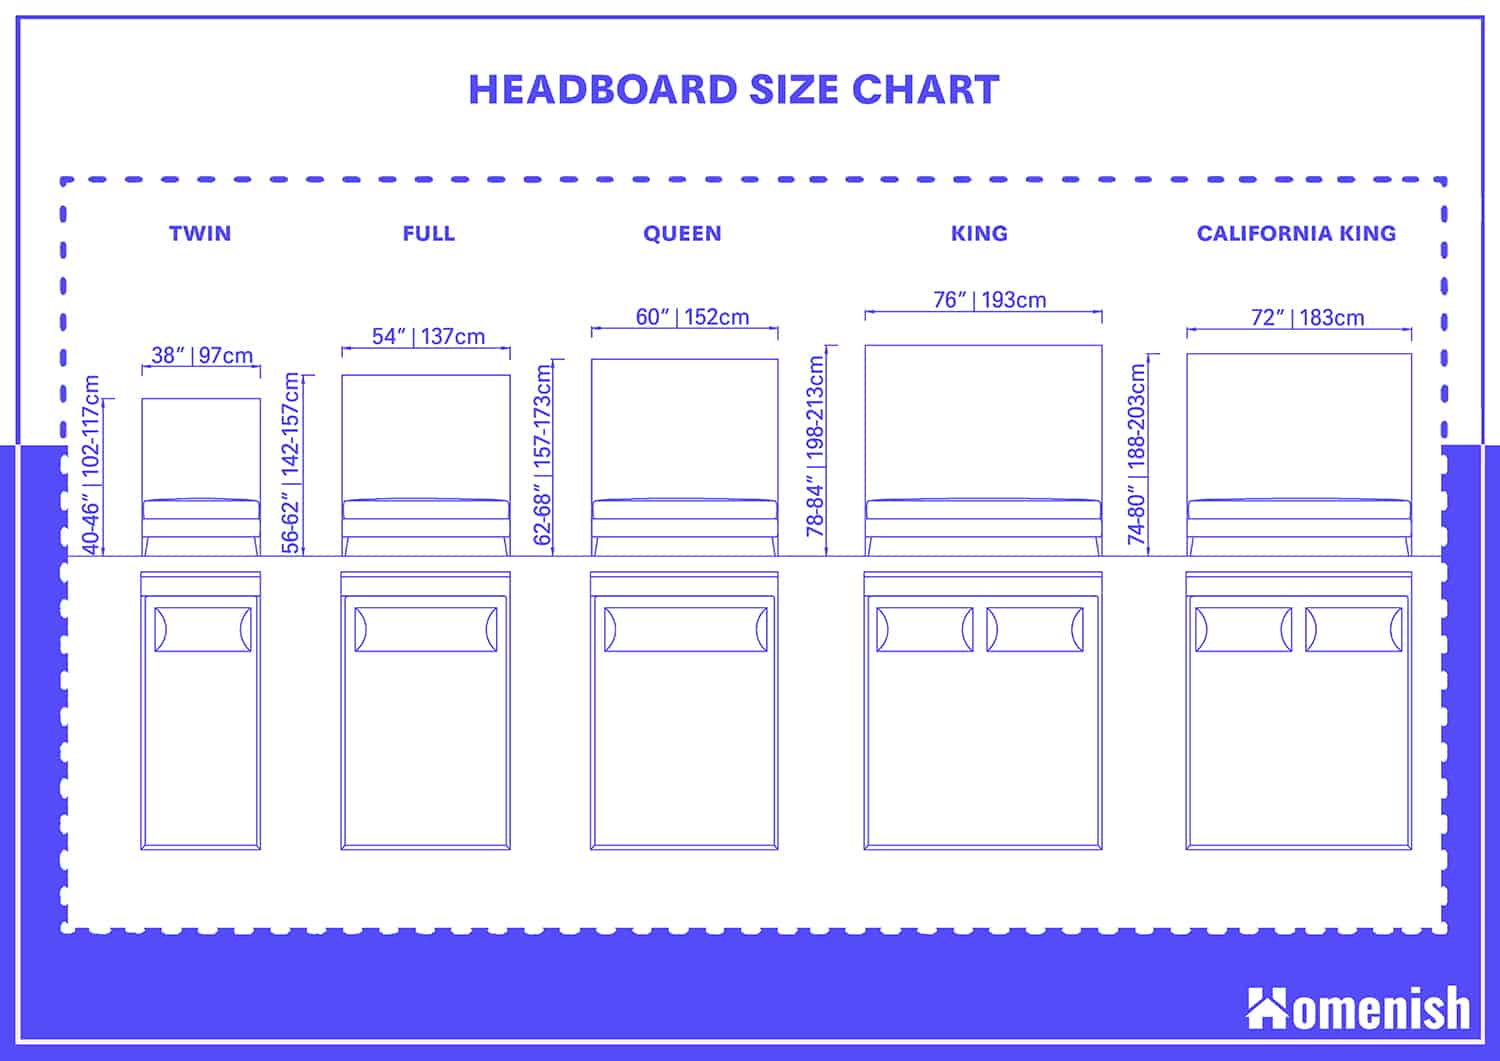 Standard Headboard Dimensions, Twin Size Headboard Dimensions